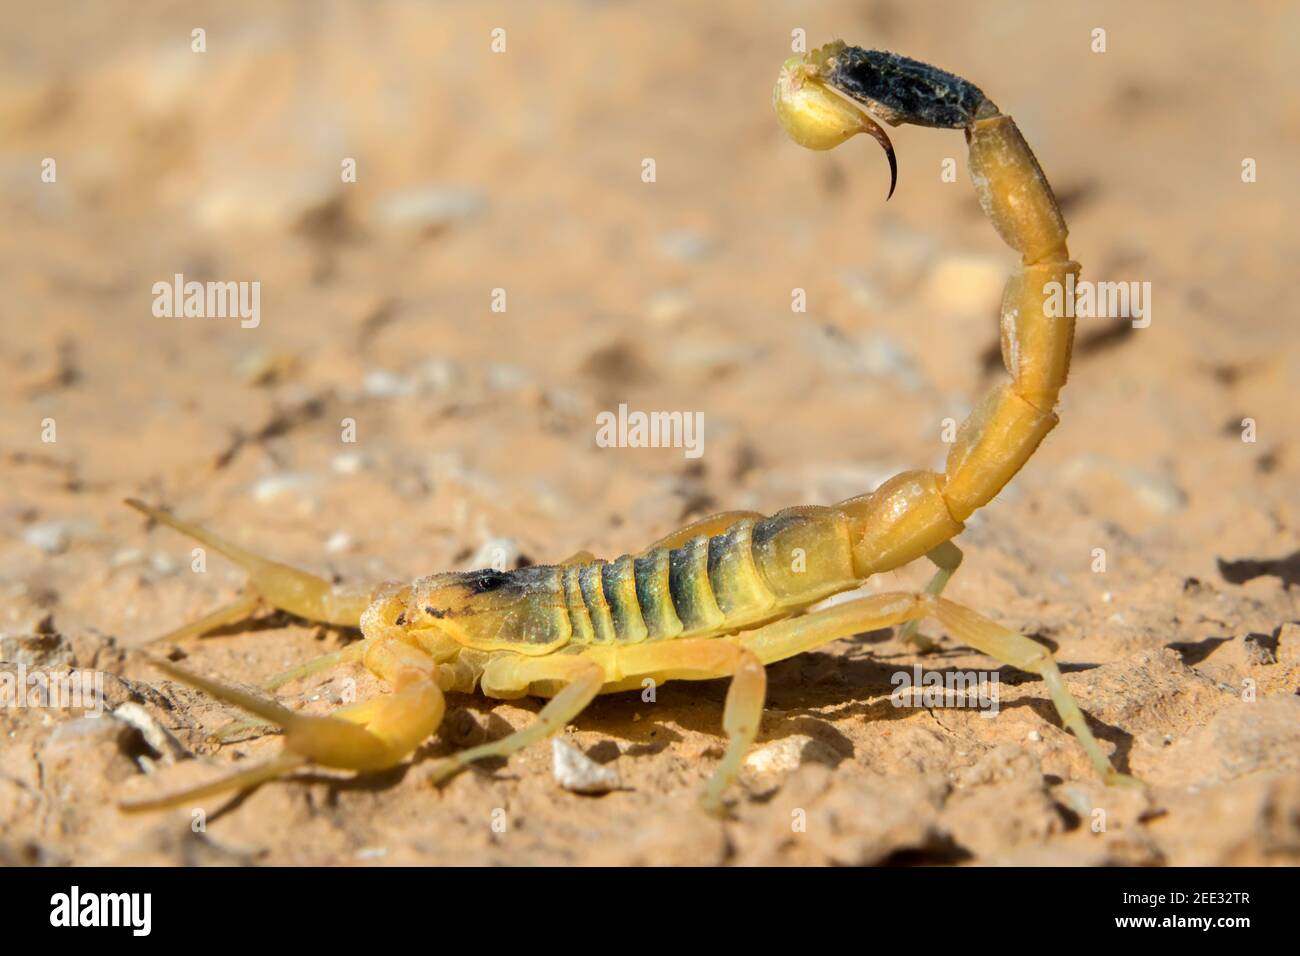 Deathstalker scorpion, or Israeli yellow scorpion (Leiurus quinquestriatus) in defensive posture, Negev Desert, Israel. Stock Photo